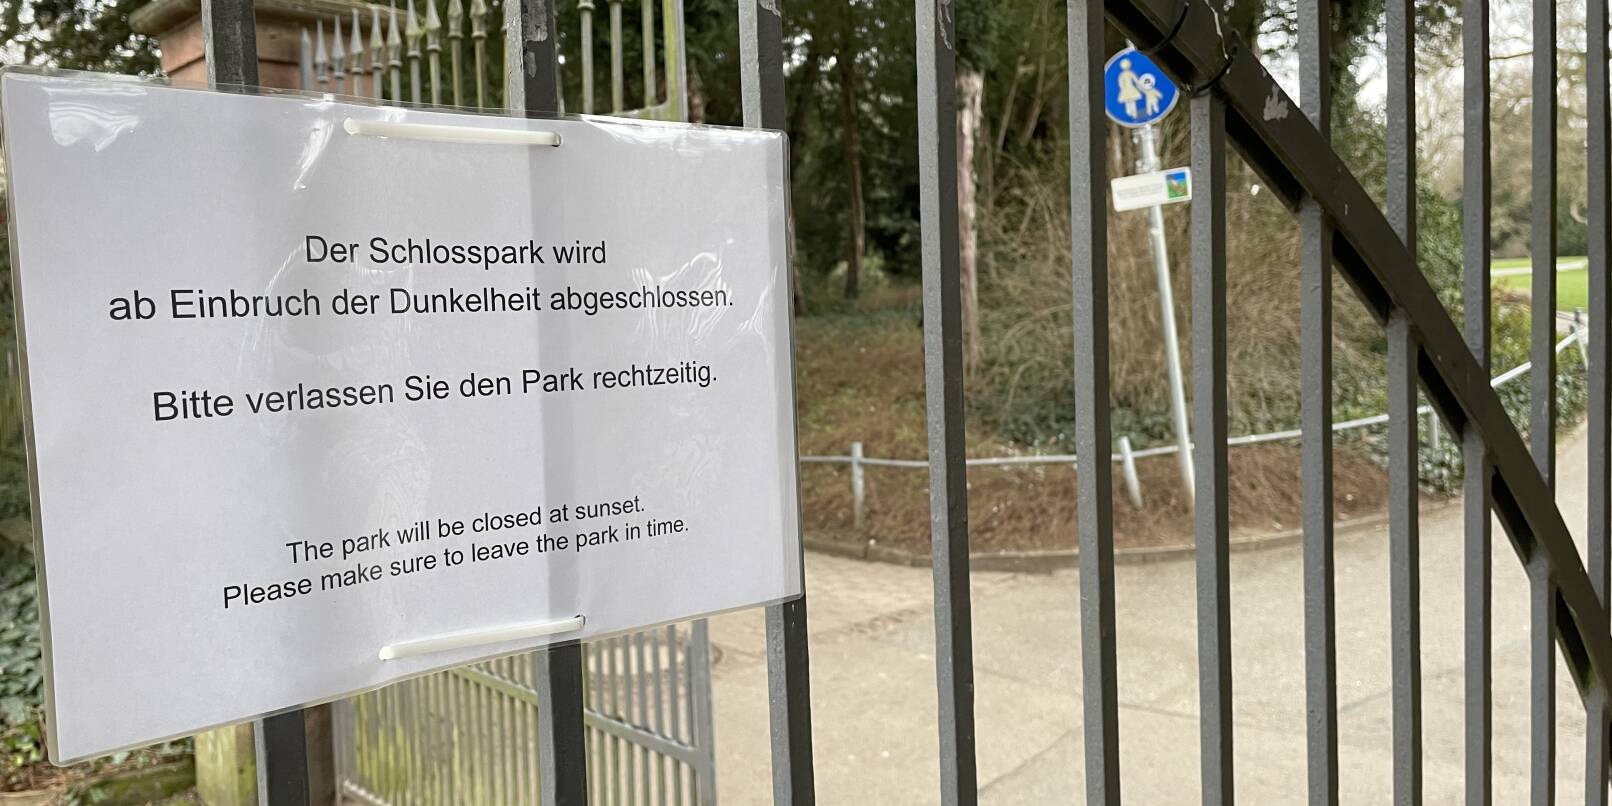 Der Schlosspark in Weinheim wird seit Kurzem abends dichtgemacht. Vorausgegangen war eine Serie schwerer Vandalismus-Taten.